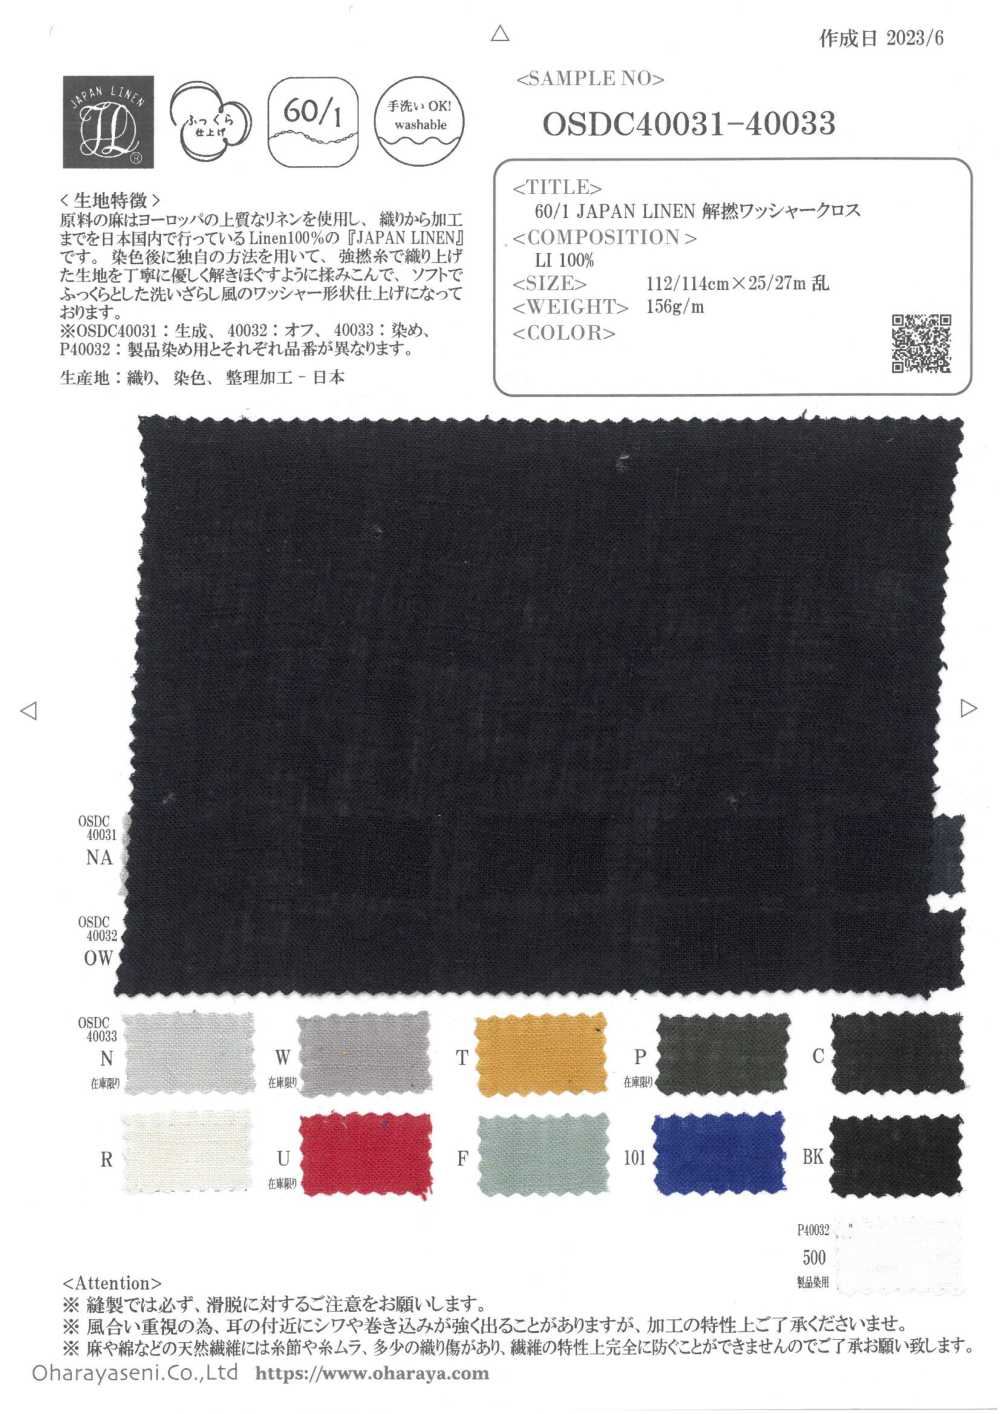 OSDC40032 60/1 JAPAN LINEN Aufdreh-Waschmaschinen-Verarbeitungstuch (Gebrochenes Weiß)[Textilgewebe] Oharayaseni